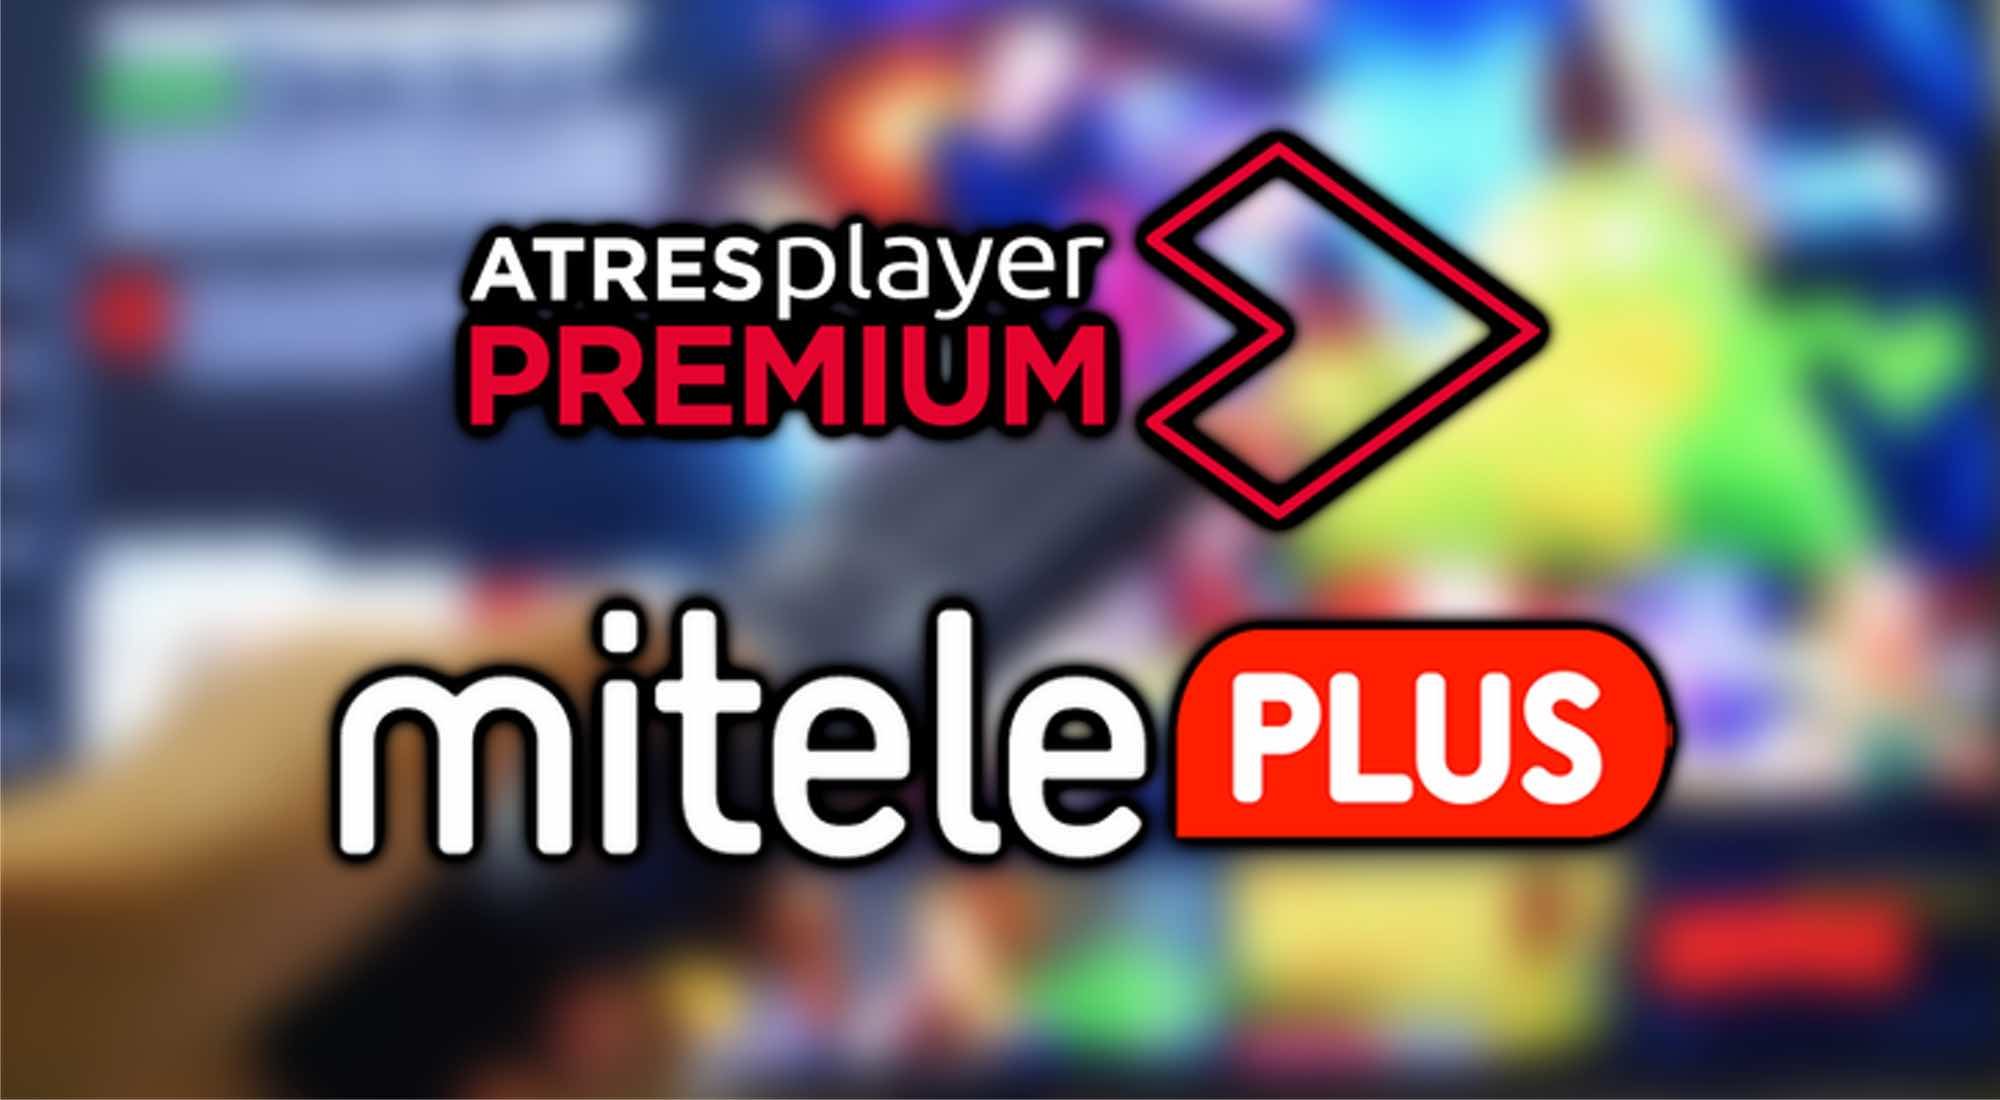 Logos Atresplayer Premium y Mitele Plus